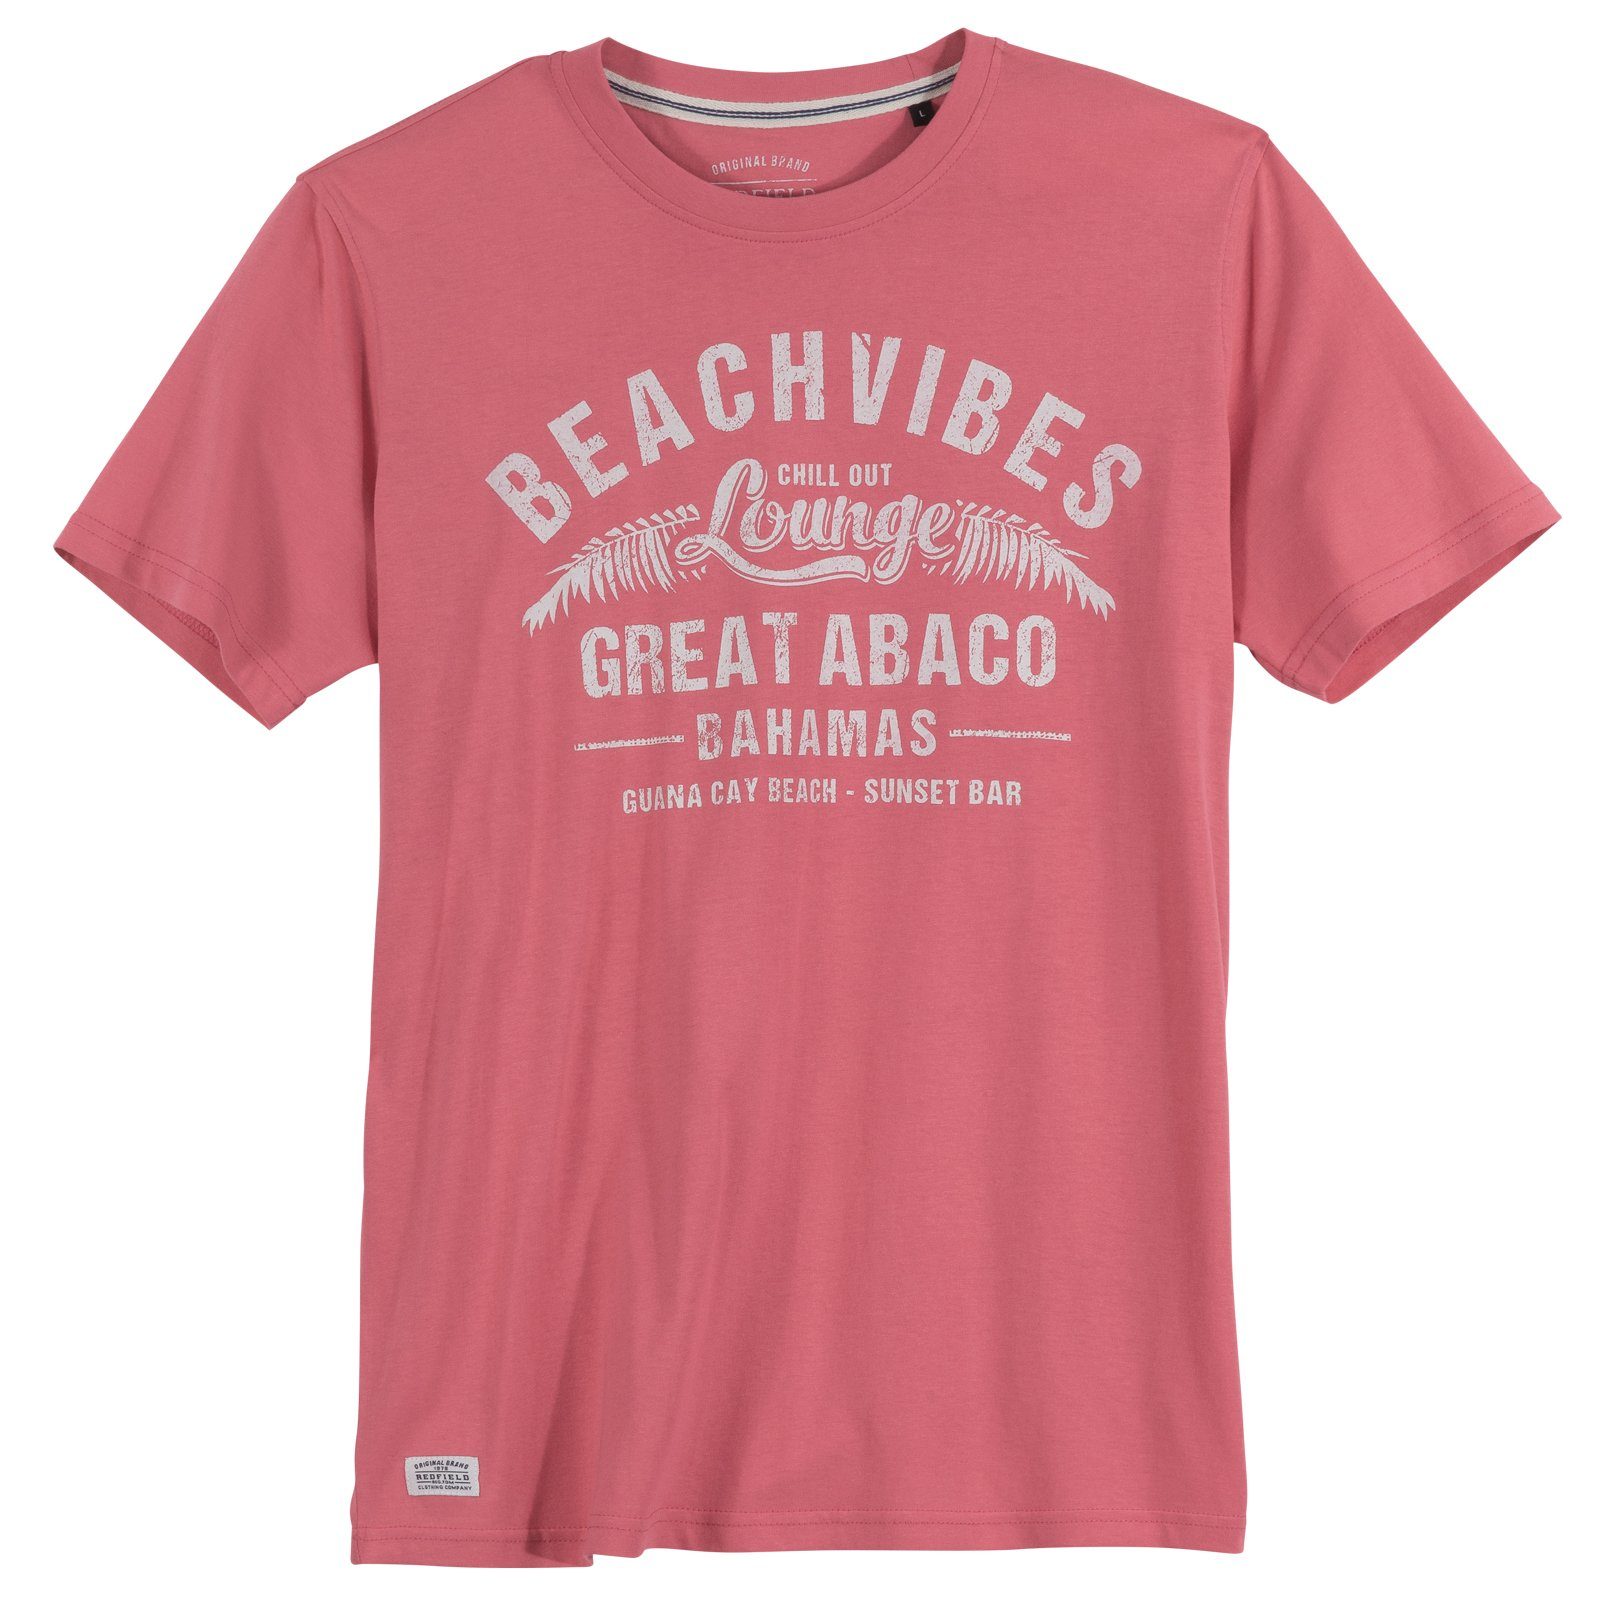 redfield Print-Shirt Große Größen Herren T-Shirt pink Beachvibes Redfield